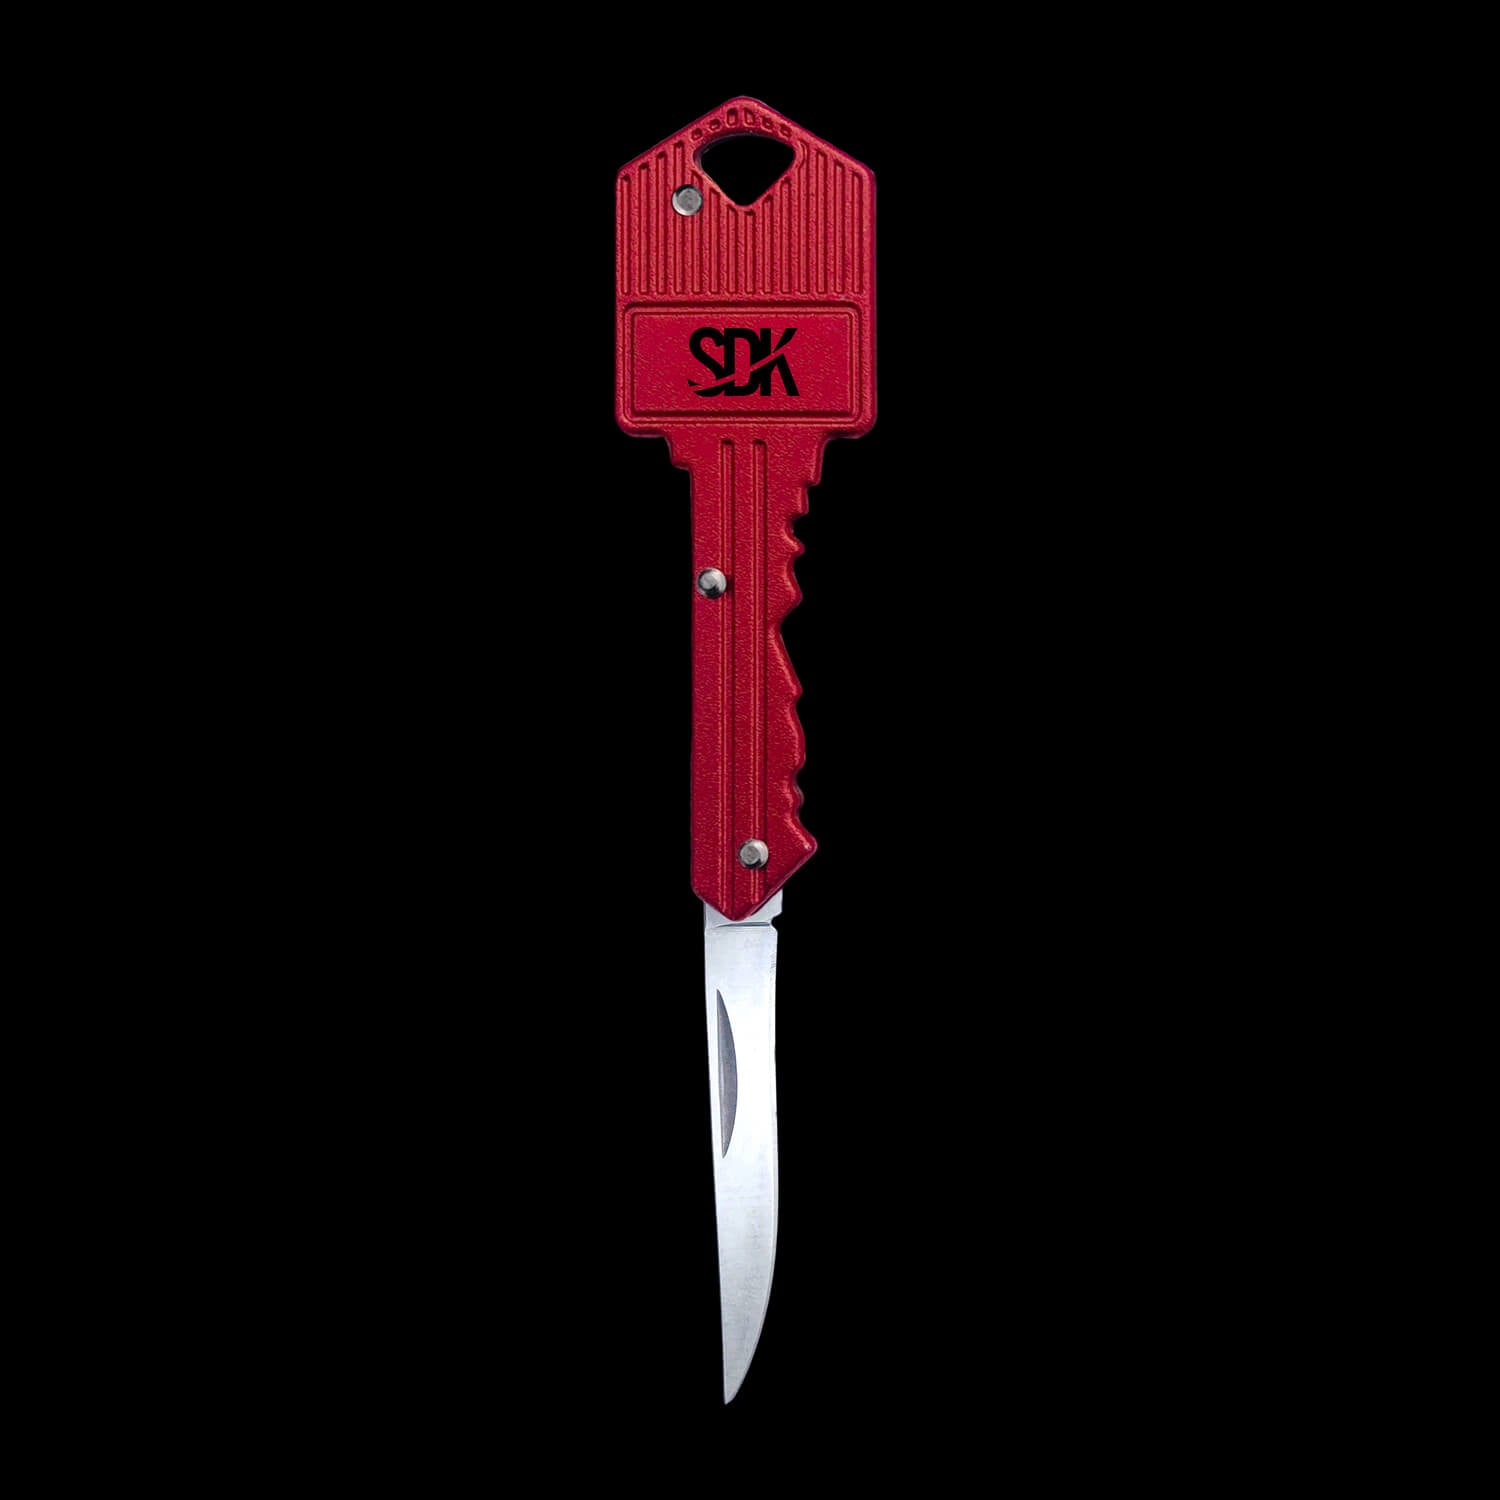 SDK Kit Red Key Knife (open position) (stainless steel key-shaped flip knife)